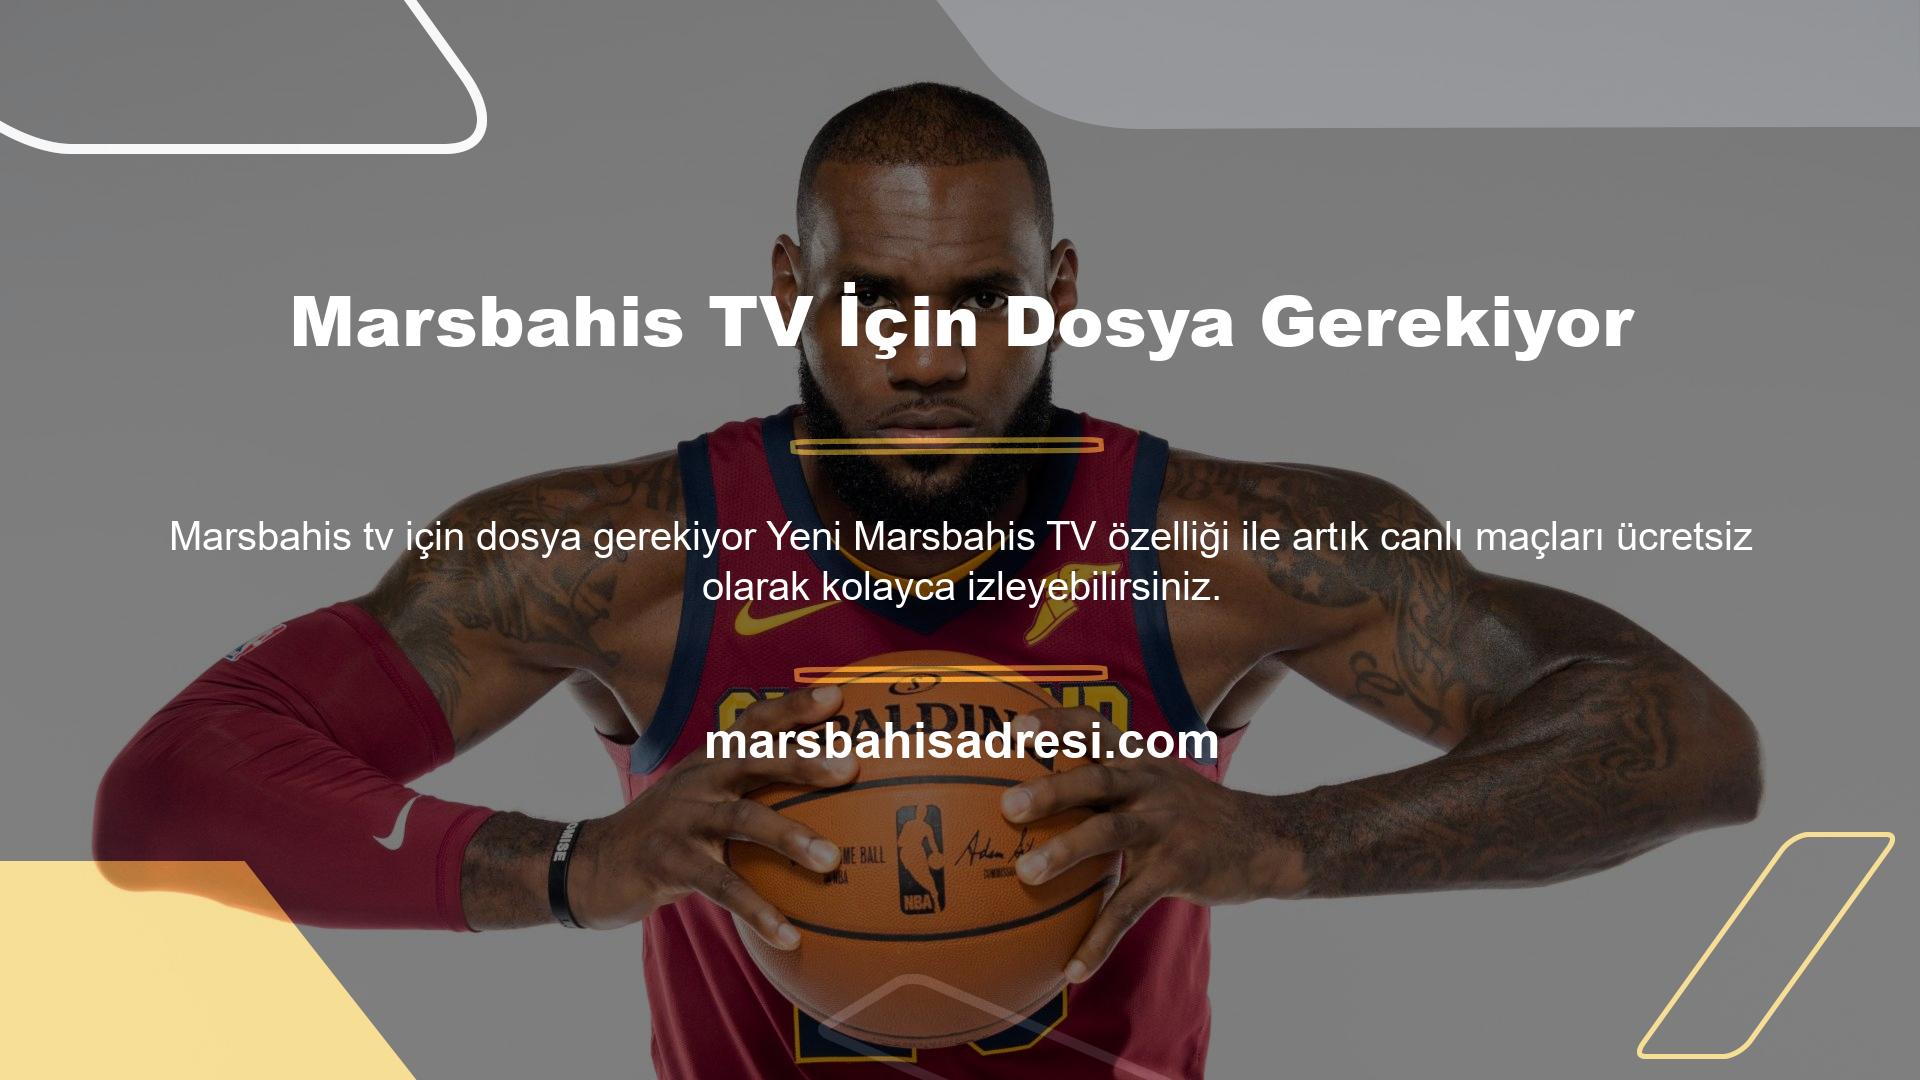 Marsbahis TV üyelik hizmeti olarak ücretsiz ve reklamsız canlı maç izleme platformudur